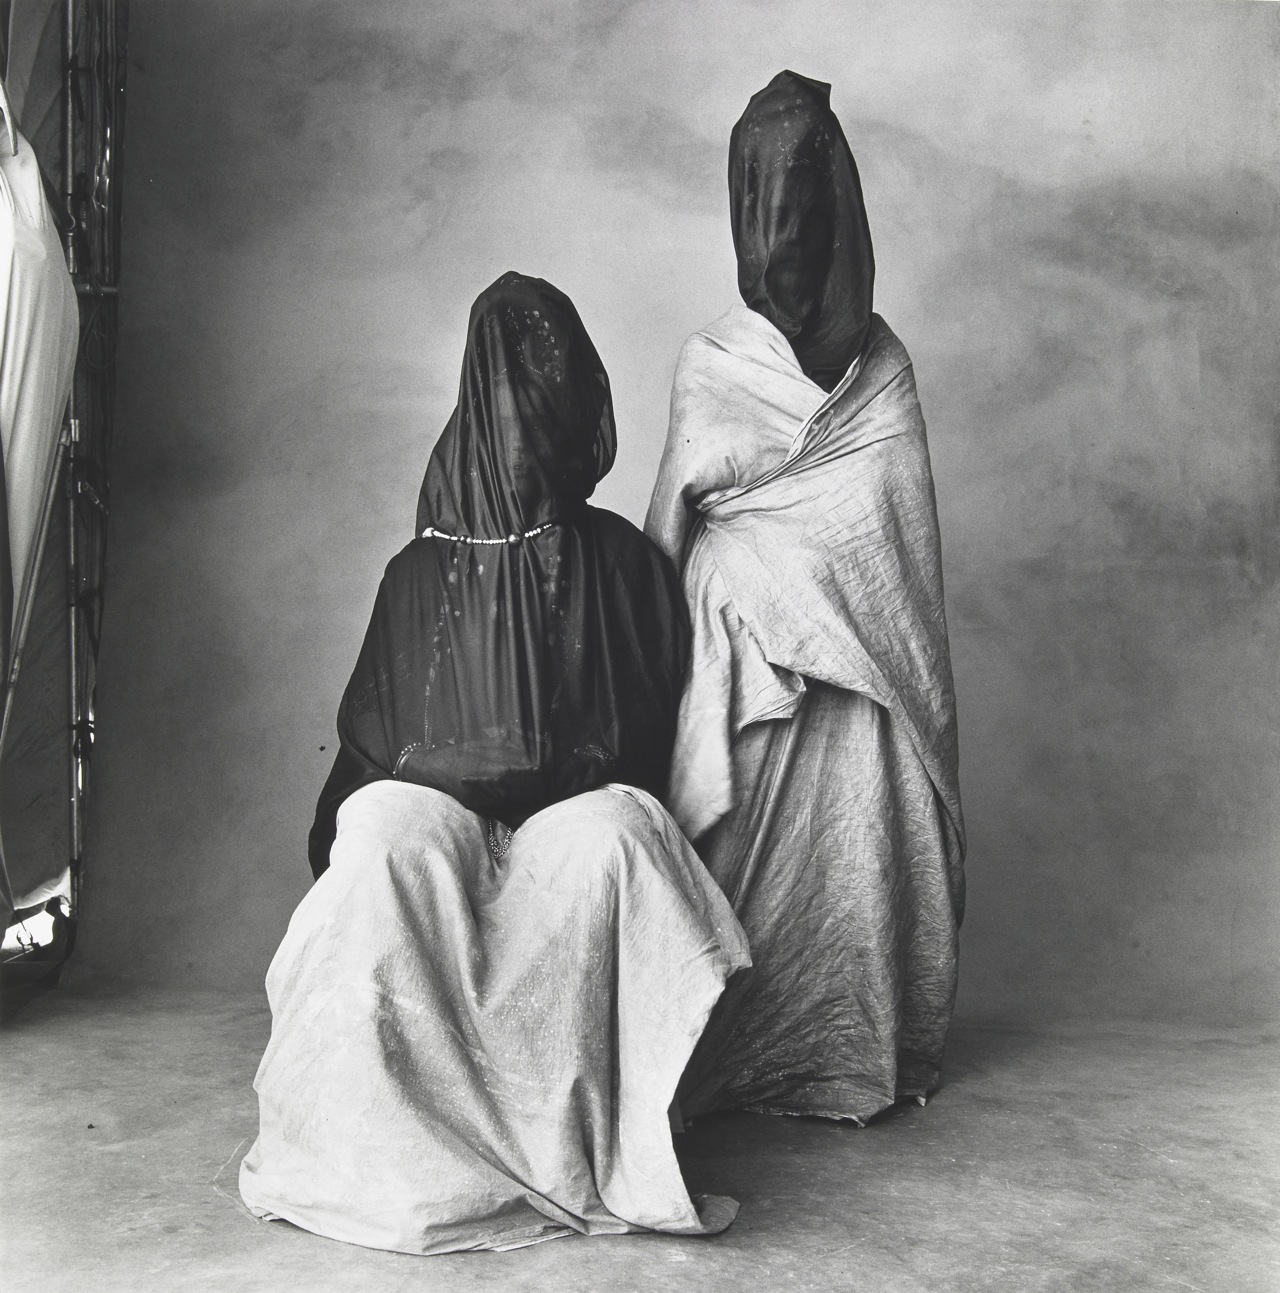 Irving Penn, Veiled Mystery of Morocco, 1972